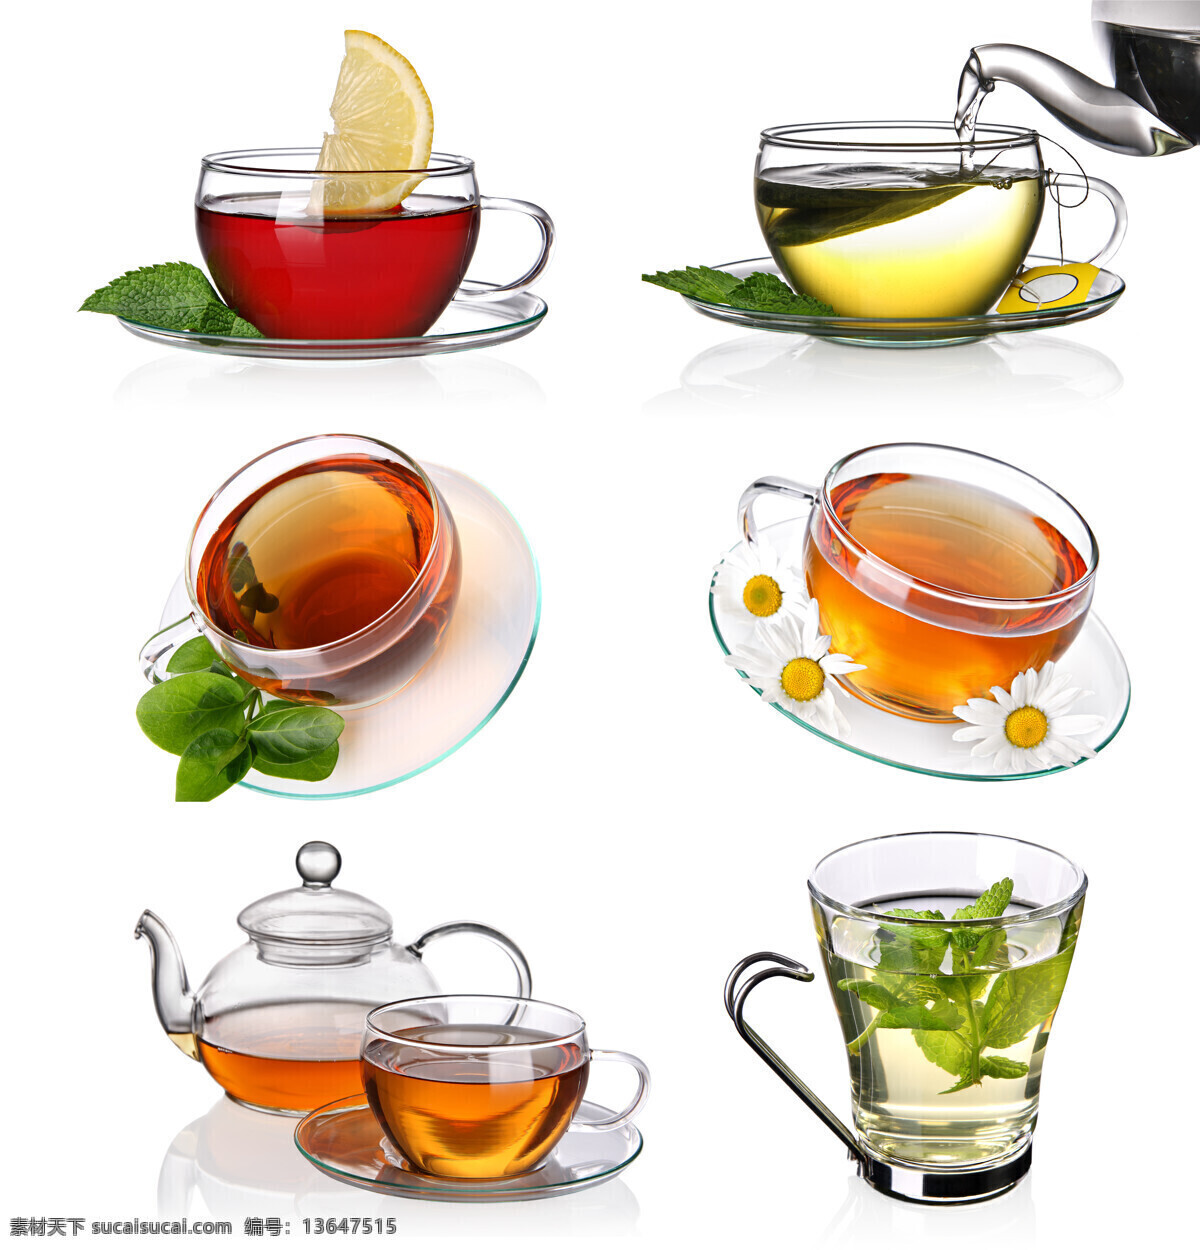 玻璃 茶具 泡茶 茶 茶叶 沏茶 绿茶 杯子 茶杯 玻璃茶杯 茶壶 玻璃茶壶 倒茶 绿叶 茶道 茶文化 花 花朵 柠檬片 高清图片 茶道图片 餐饮美食